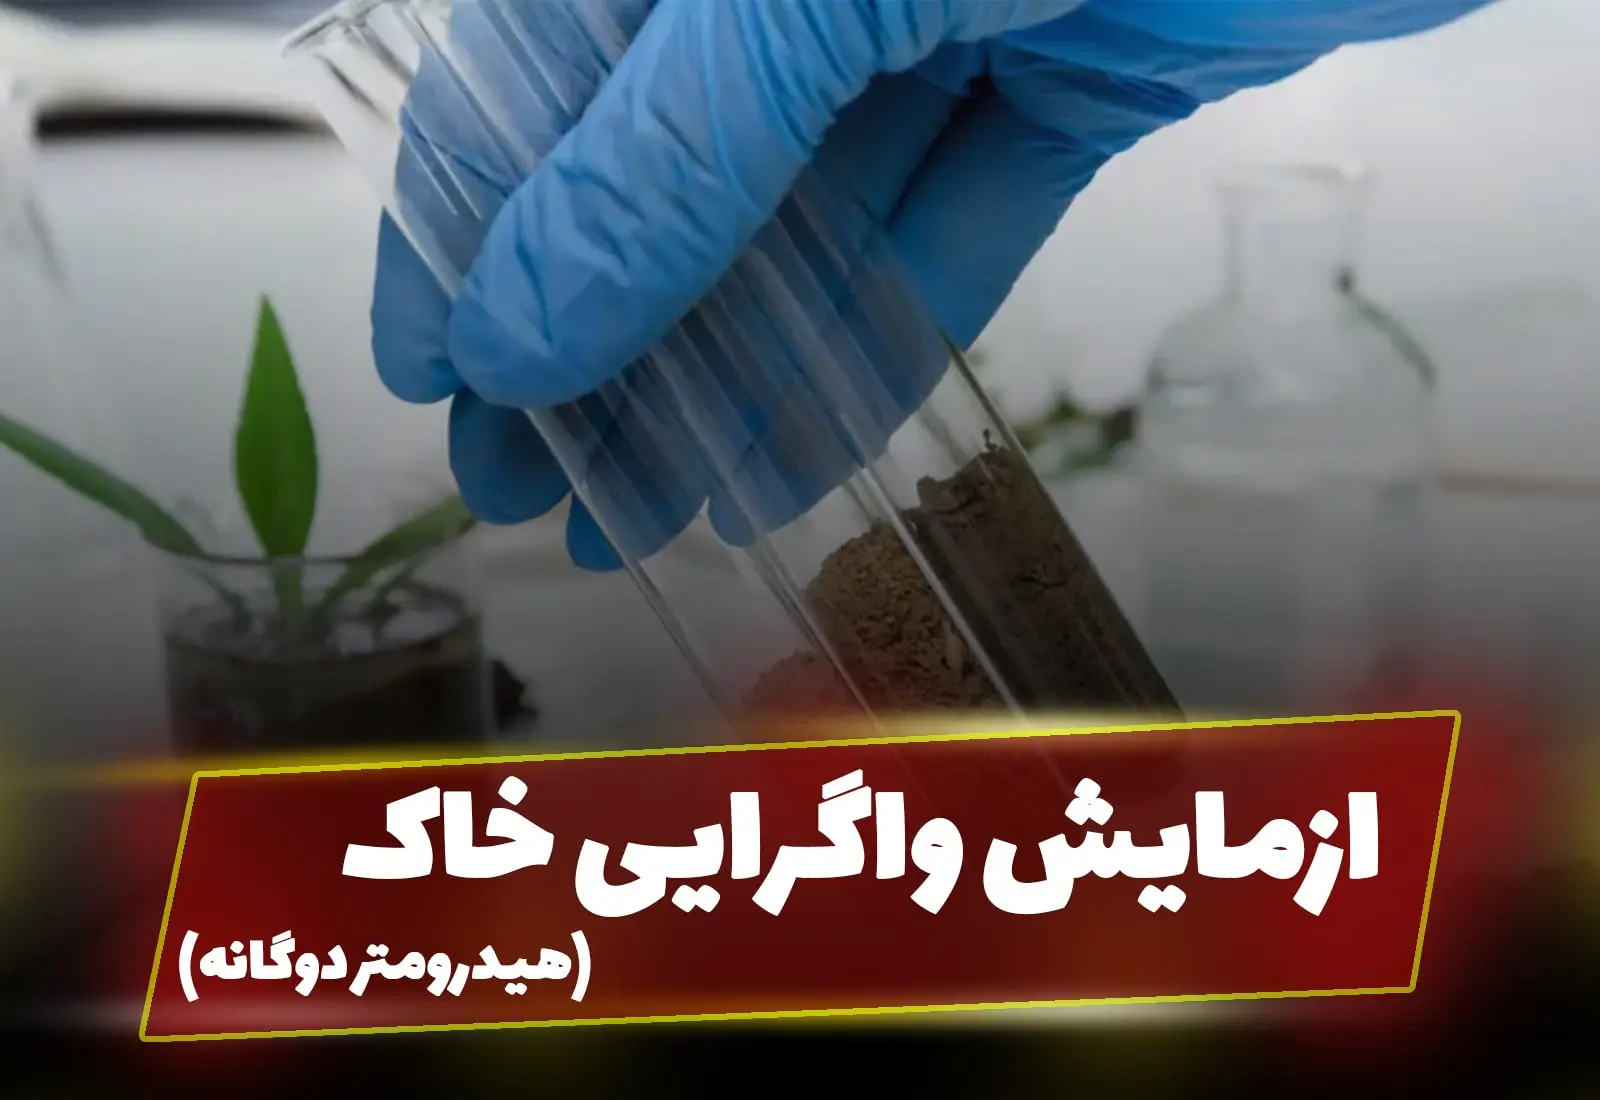 واگرایی خاک با استفاده از هیدرومتری دوگانه_آسفالت ایران